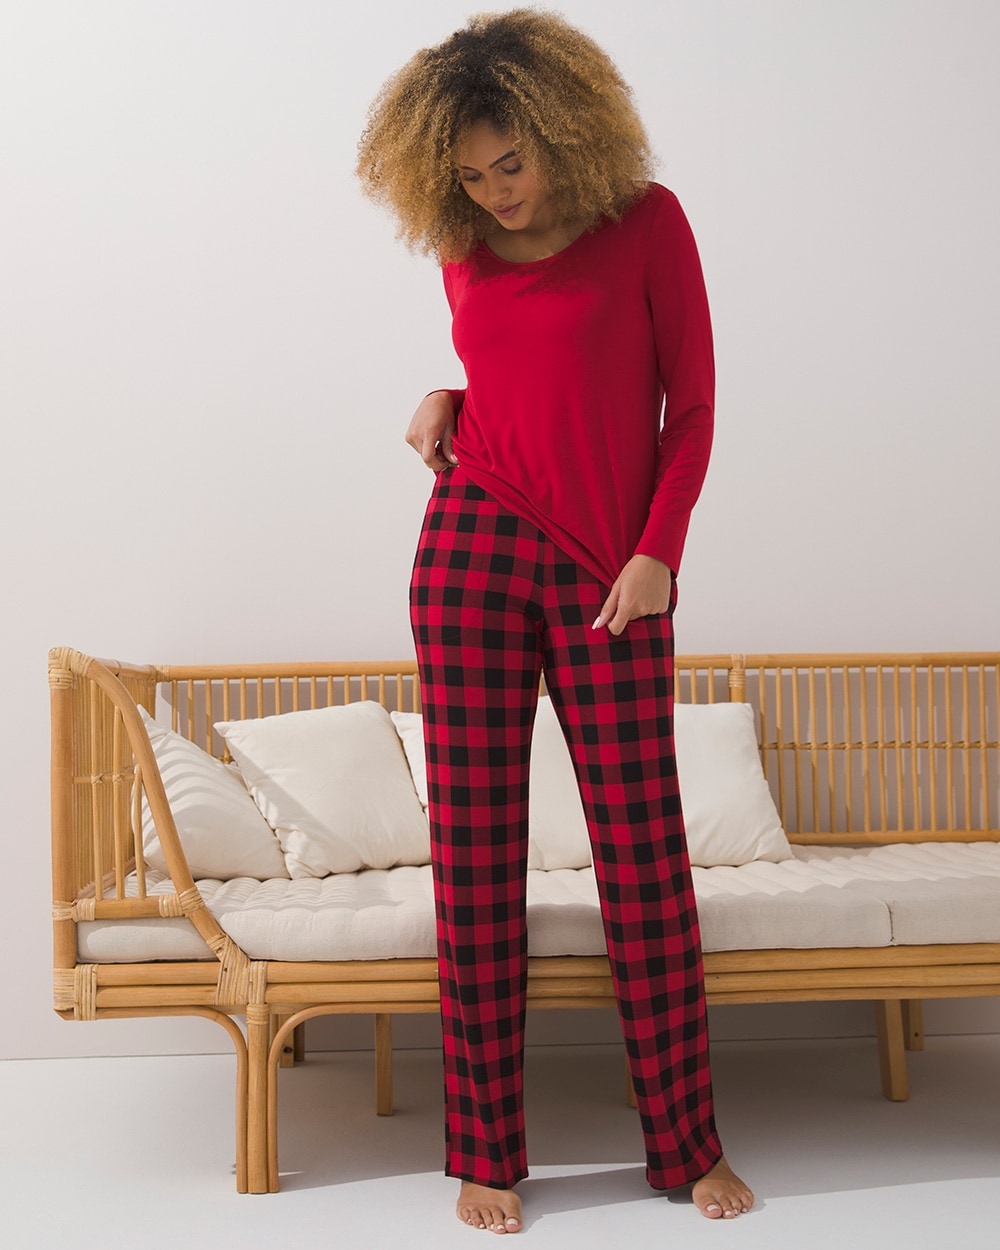 Soma Plus Size Pajamas Flash Sales, 57% OFF | www.ingeniovirtual.com